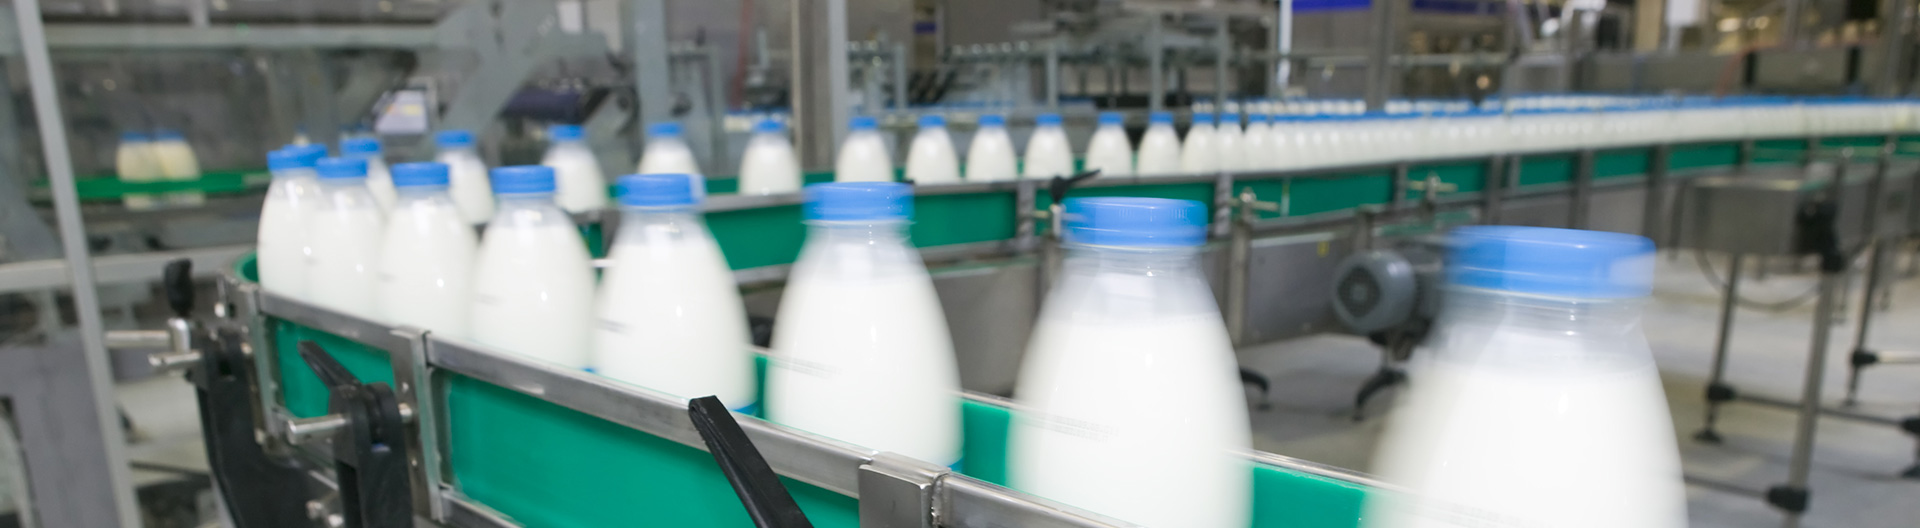 Pesage de controle dynamique des bouteilles de lait